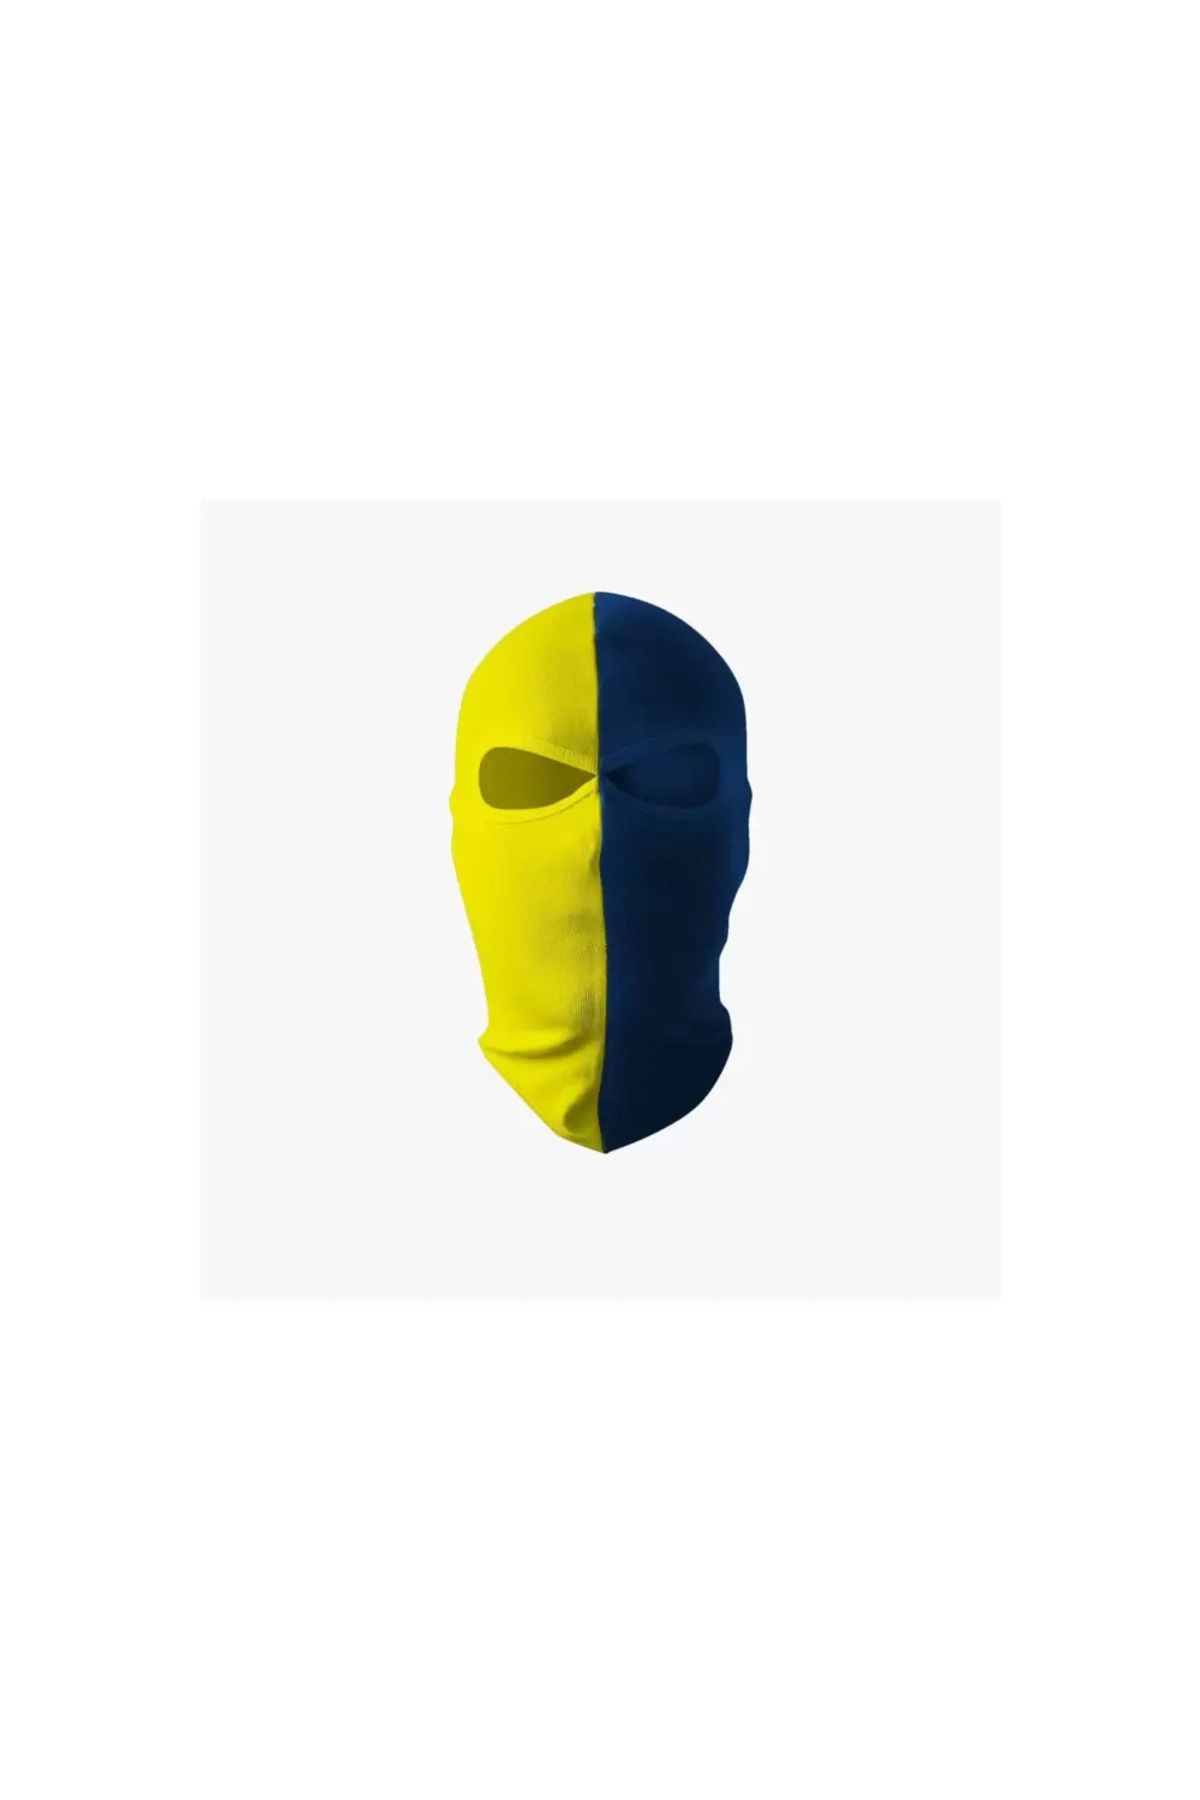 rebercity Sarı lacivert Holigan maskesi